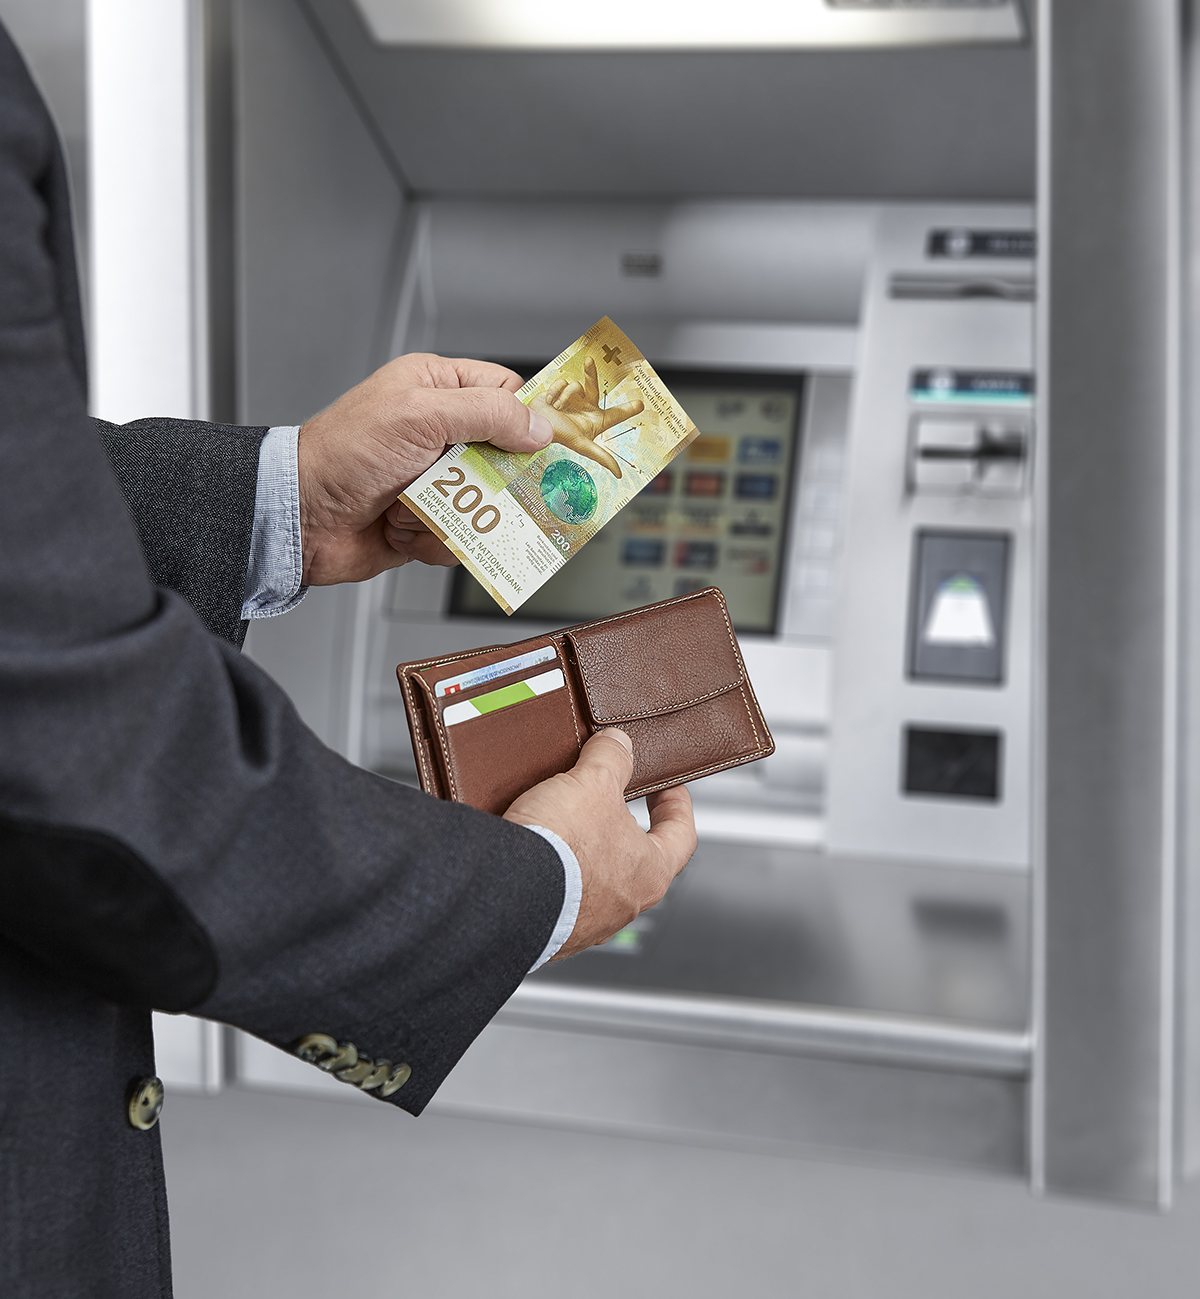 Bezug von neuen 200-Franken-Noten am Bancomaten